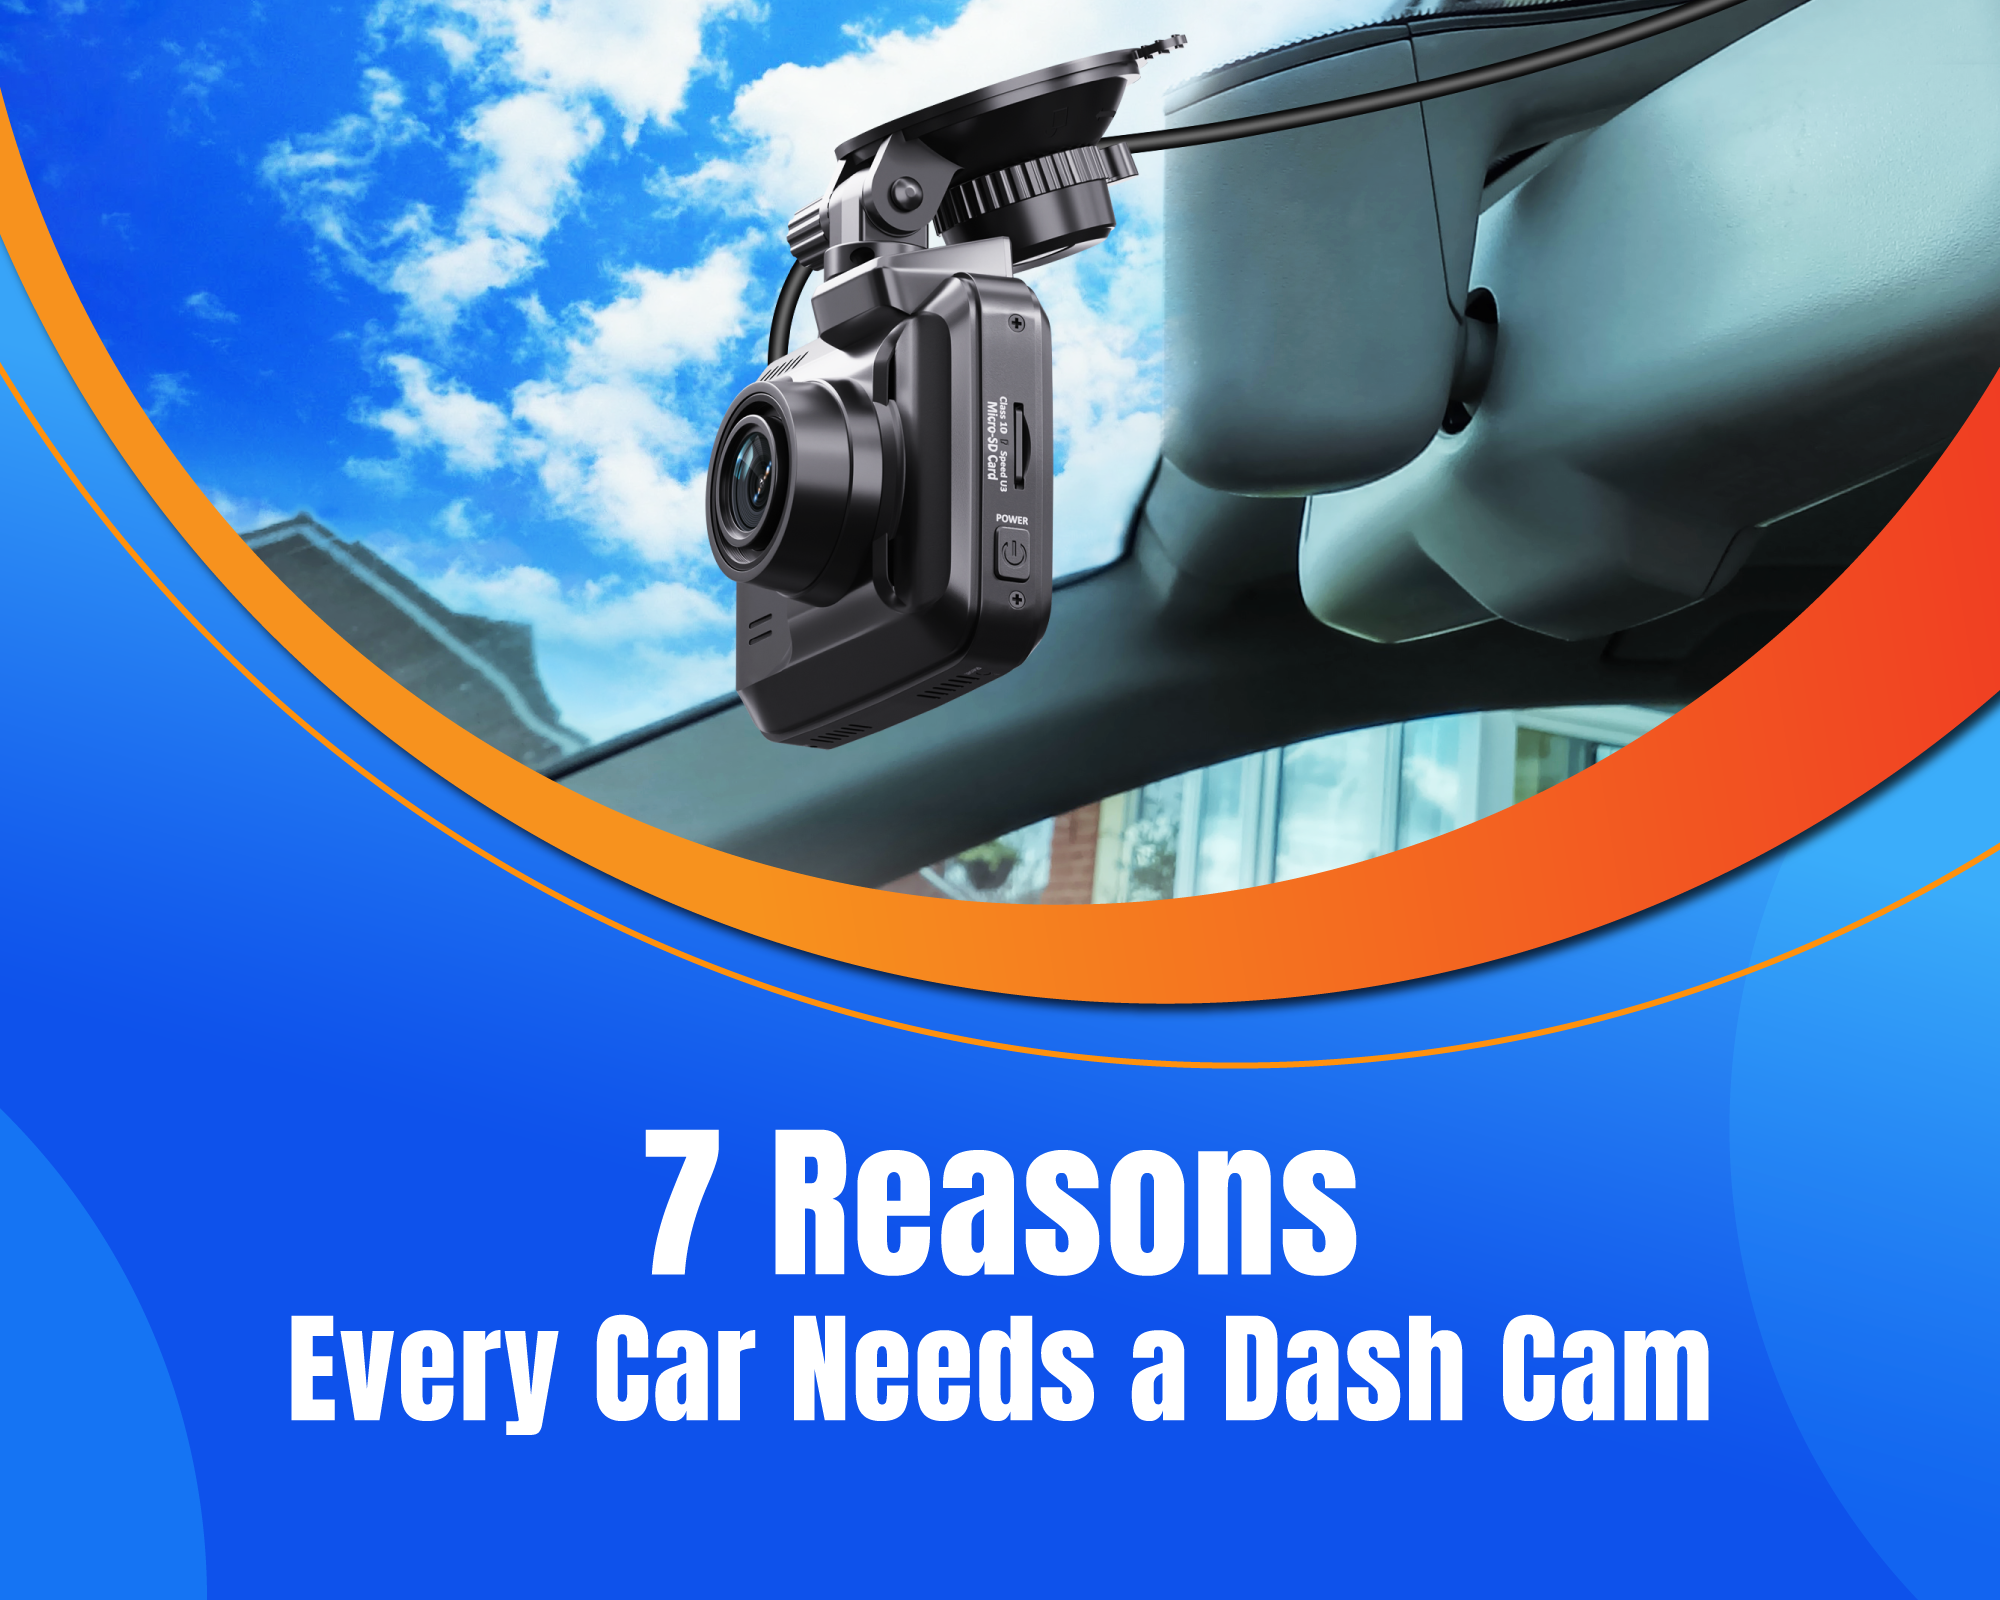 7 Reasons Every Car Needs a Dash Cam